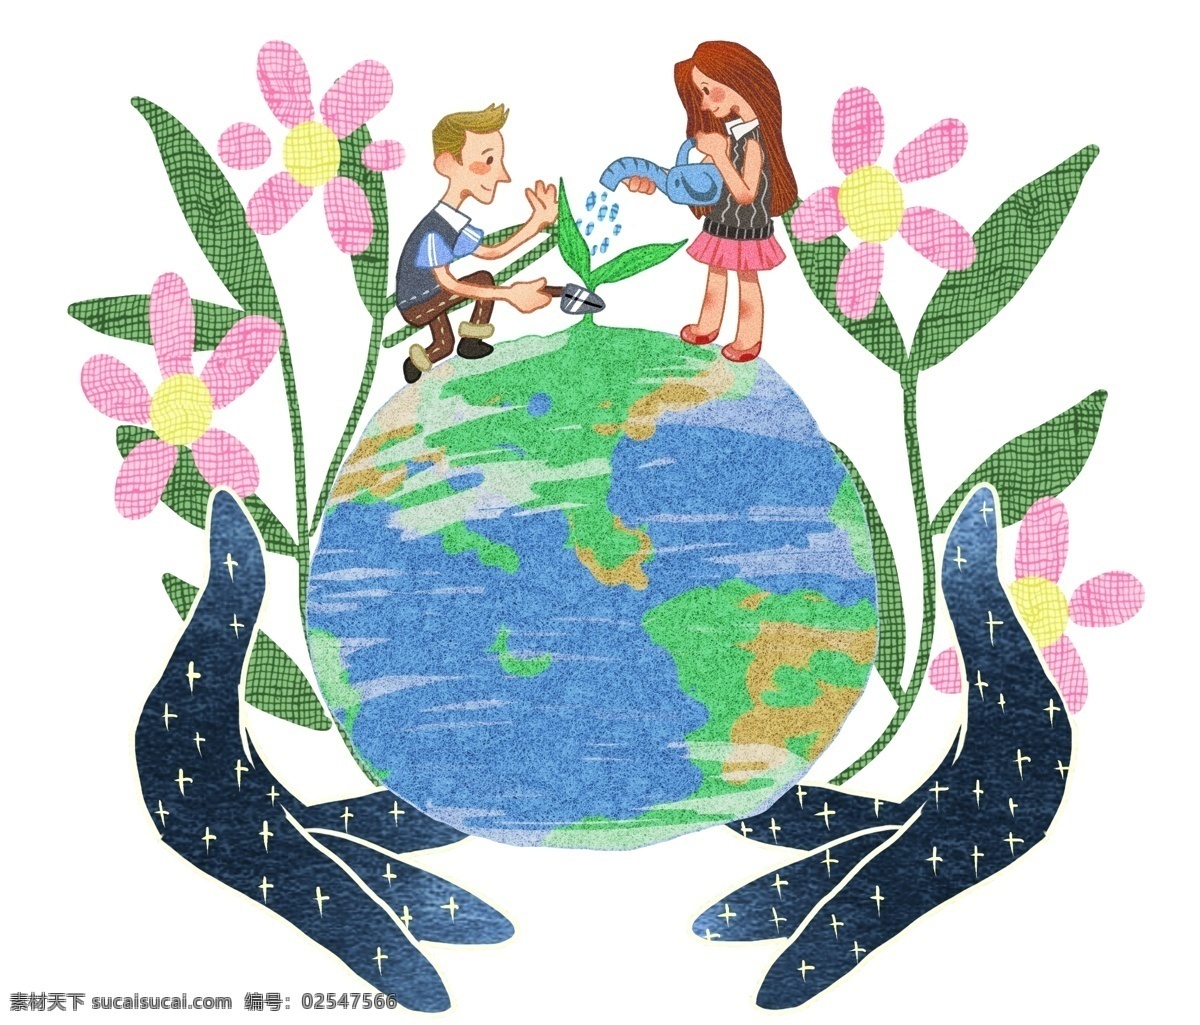 世界 地球日 保护 地球 世界地球日 保护地球 保护环境 卡通森林 绿色地球 绿色森林 绿色环境 小朋友 卡通